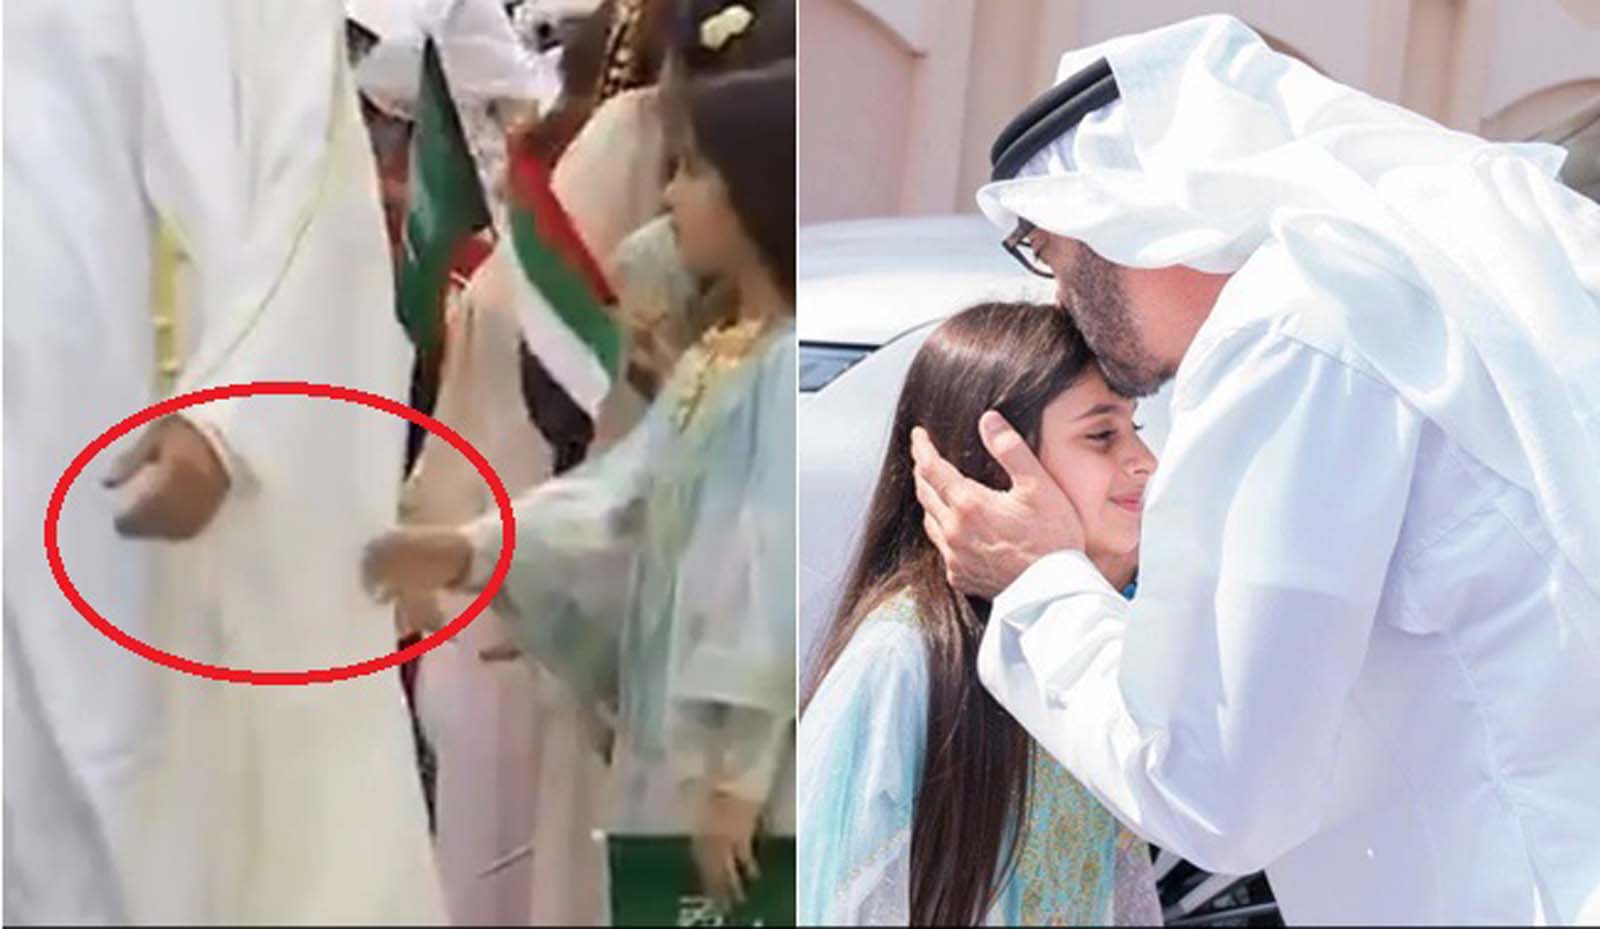  जब अबू धाबी के क्राउन प्रिंस ने एक बच्ची के घर जाकर उसकी तमन्ना पूरी कर सबका दिल जीत लिया, देखें वीडियो।